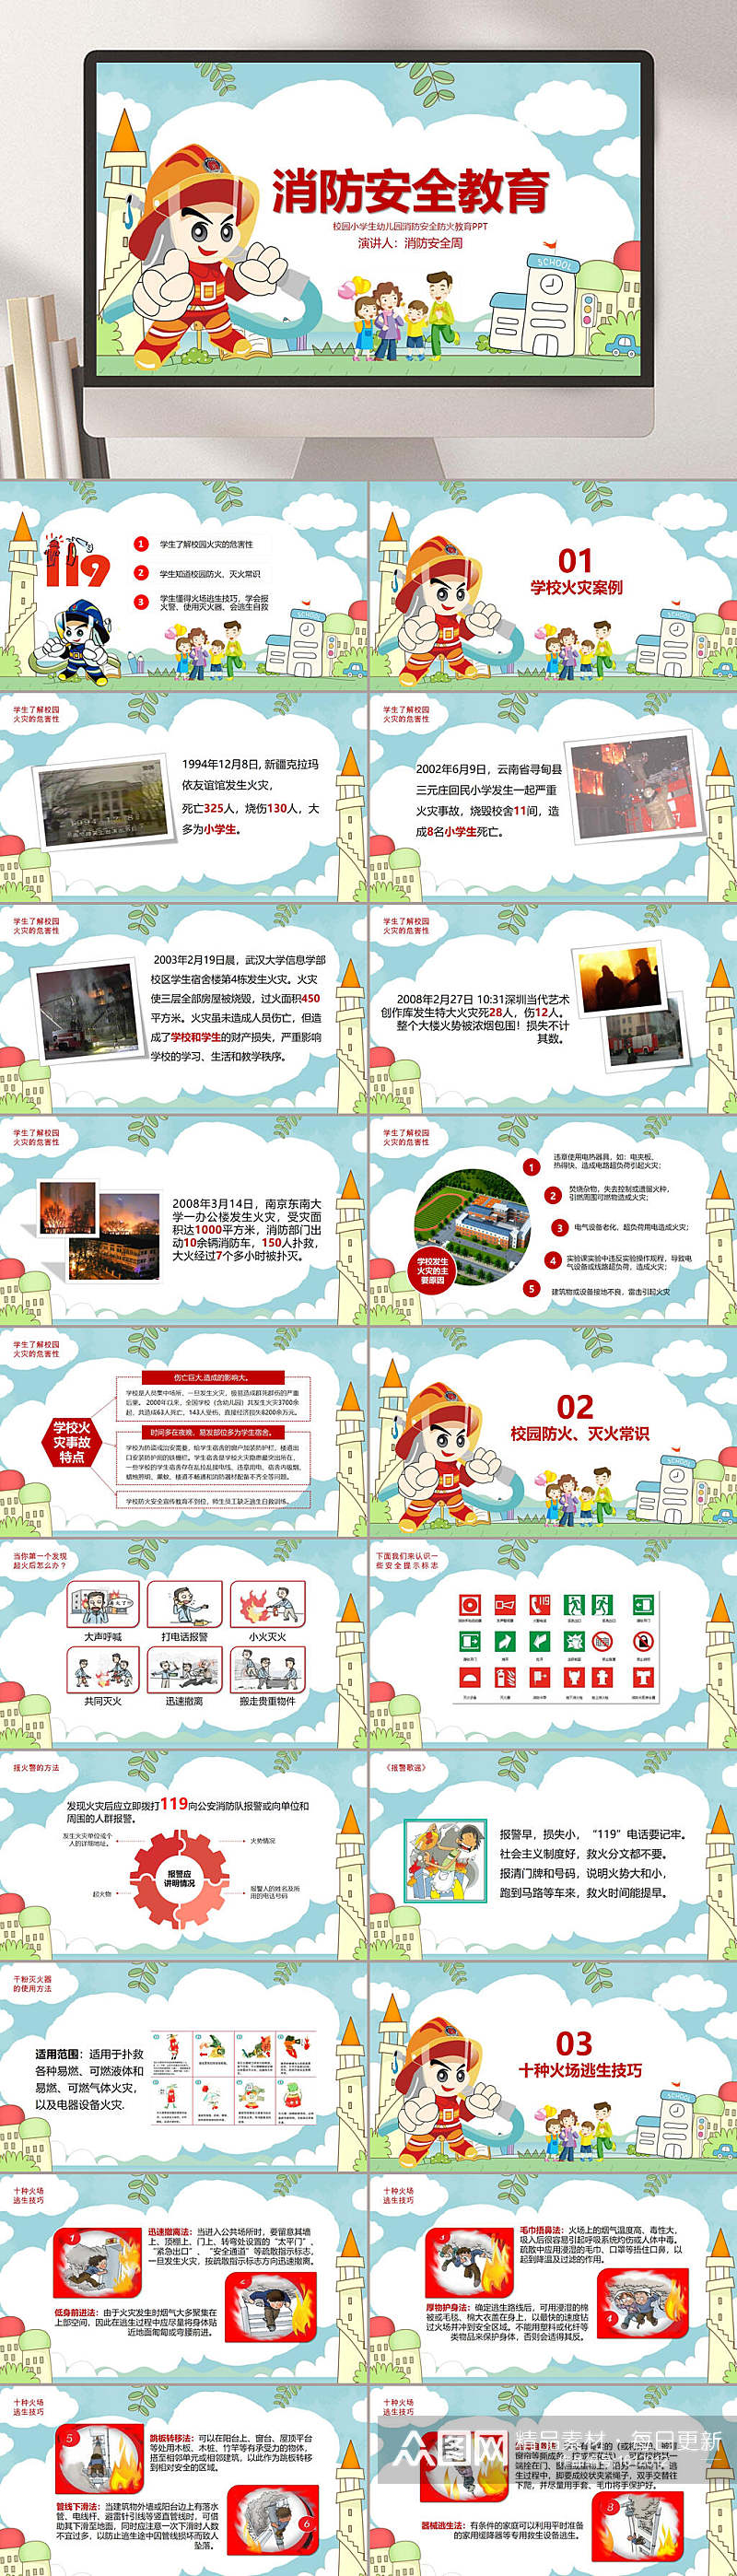 校园卡通预防火灾消防安全教育PPT模板素材